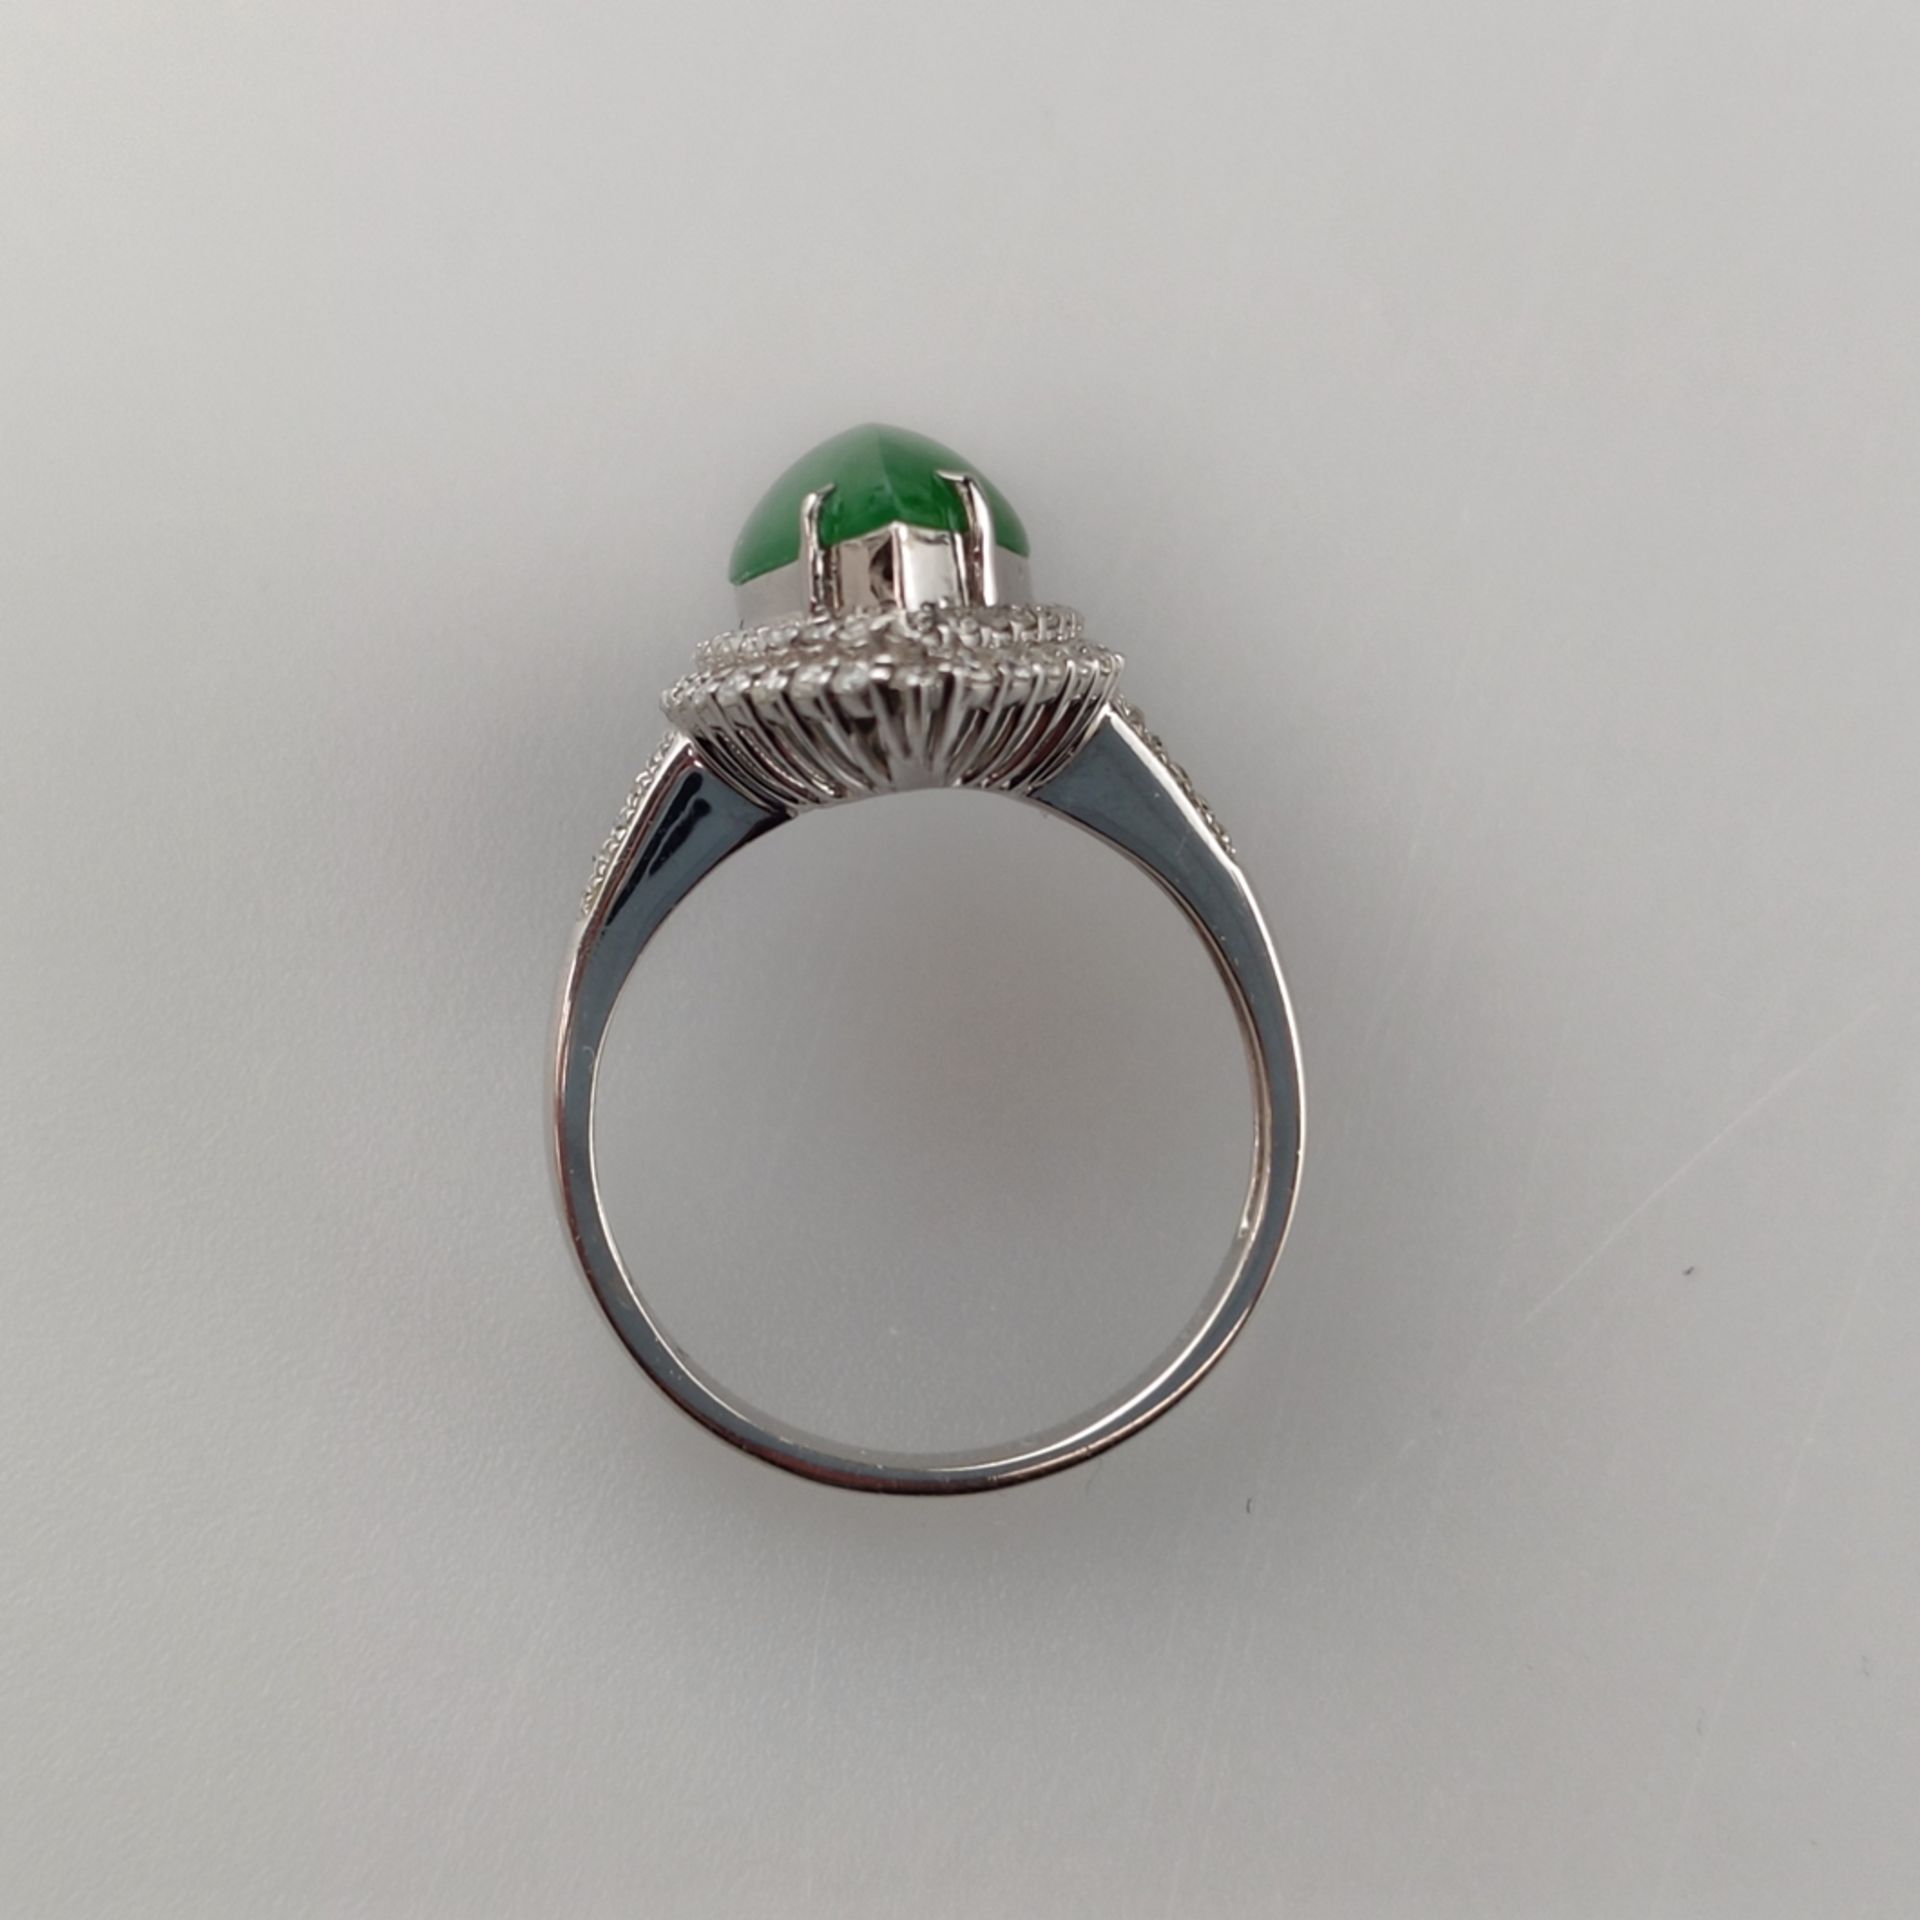 18K-Jadering mit Diamanten - Weißgold 750/000 (18K), navetteförmiger Ringkopf mit grüner Jade von c - Bild 5 aus 7